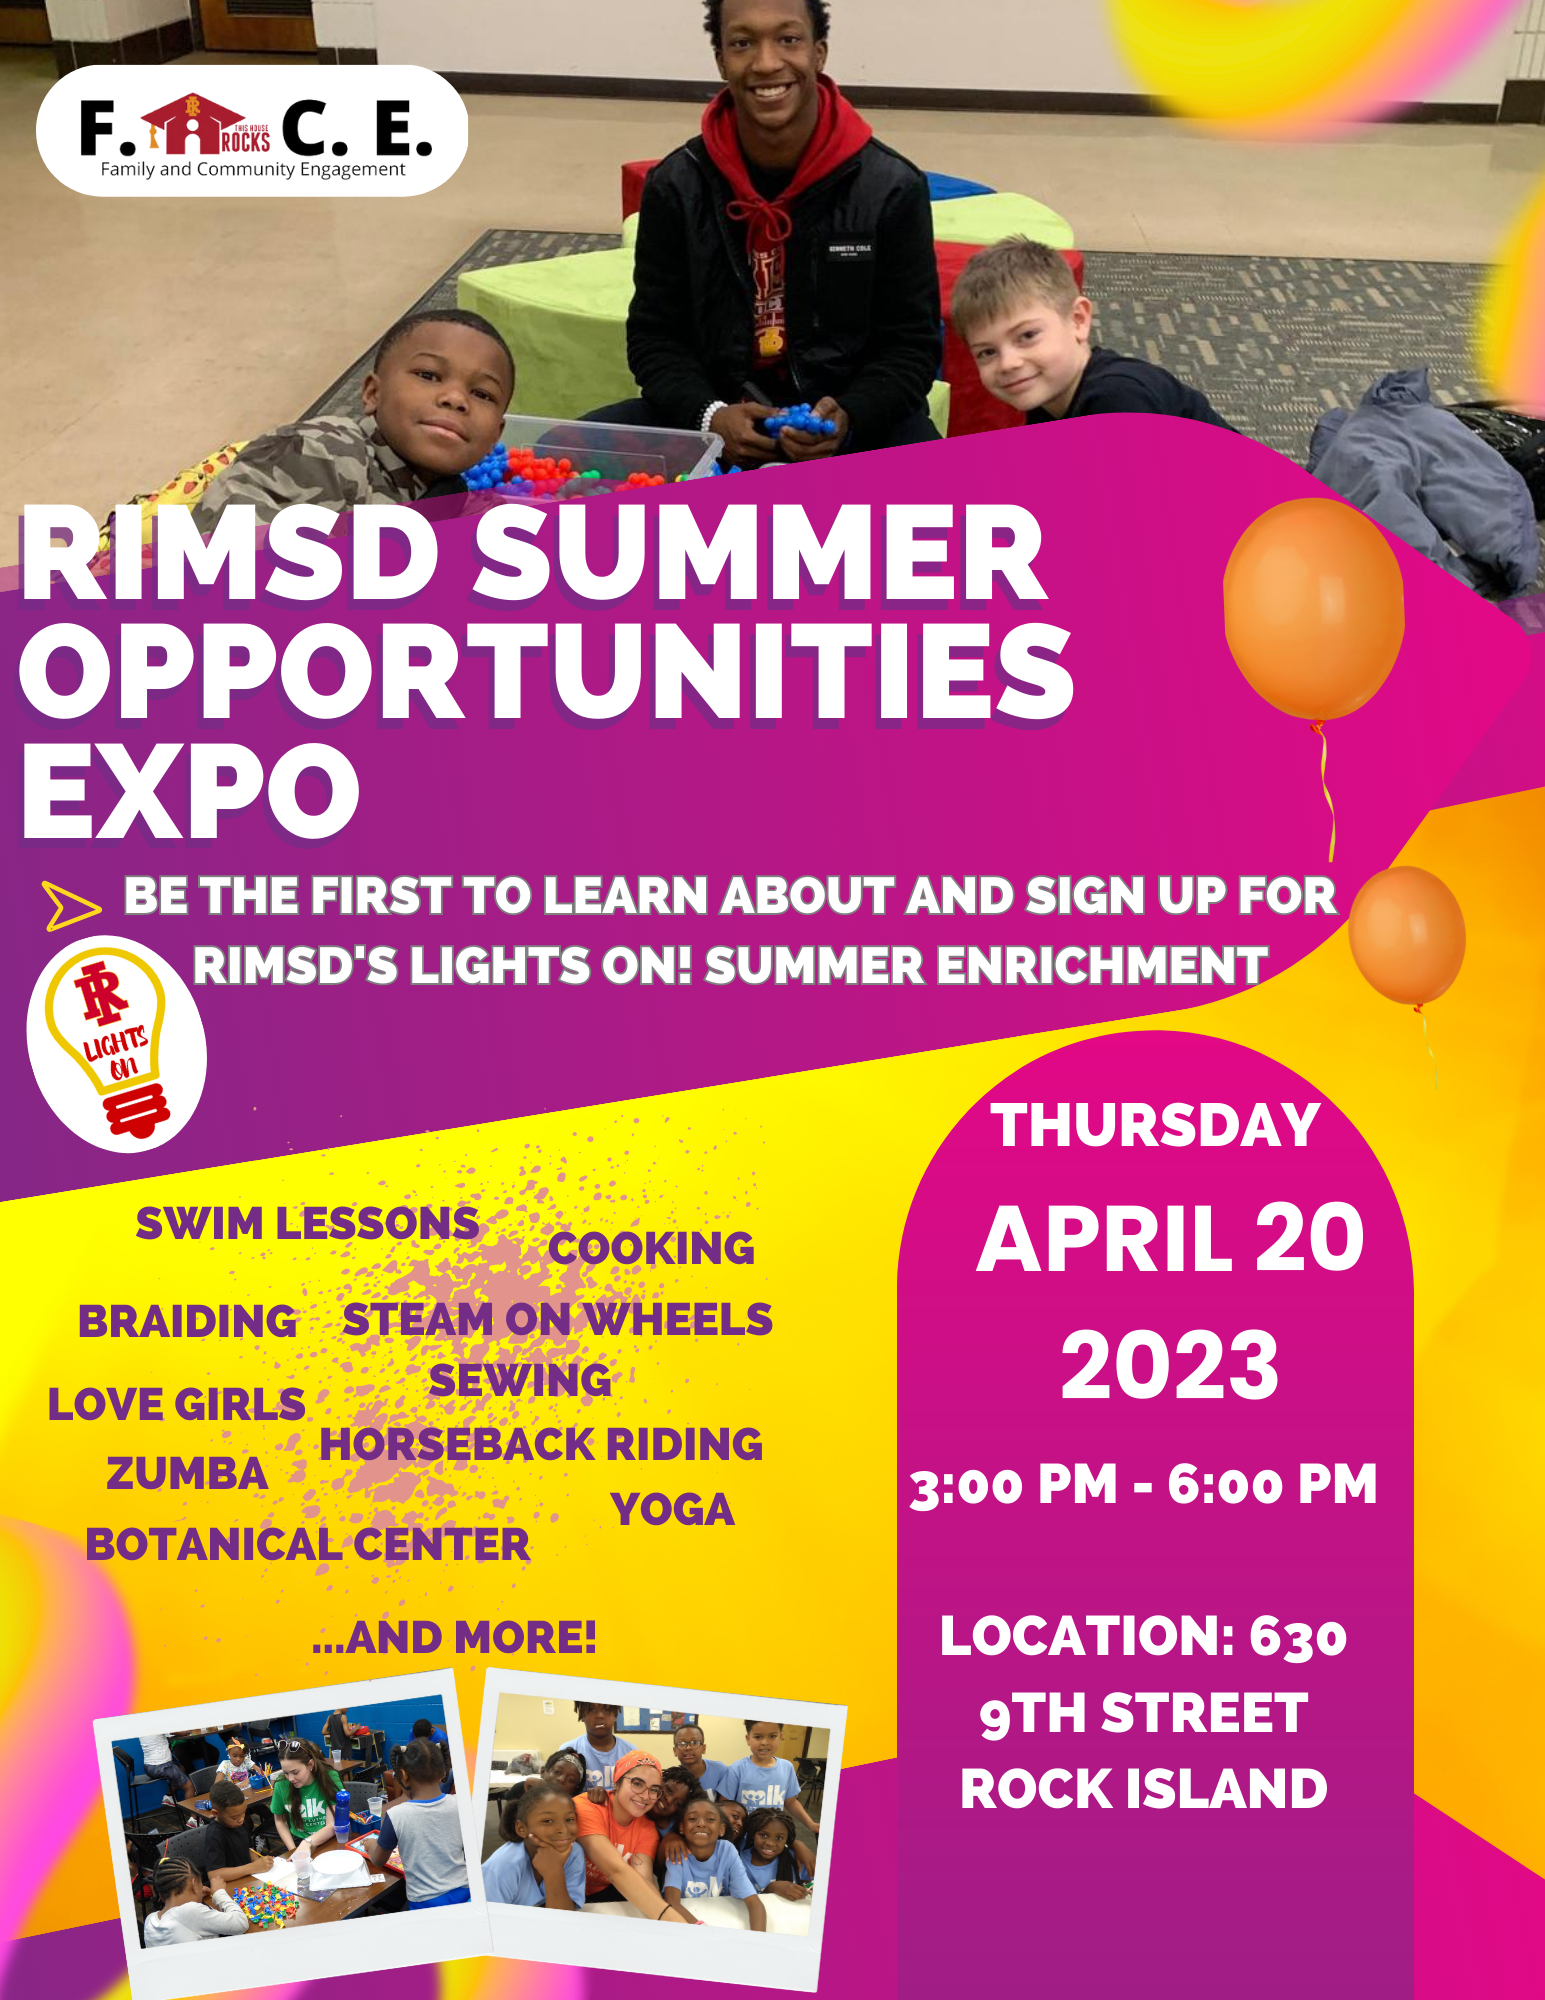 Summer Opportunities Expo flyer shows children in summer activities 